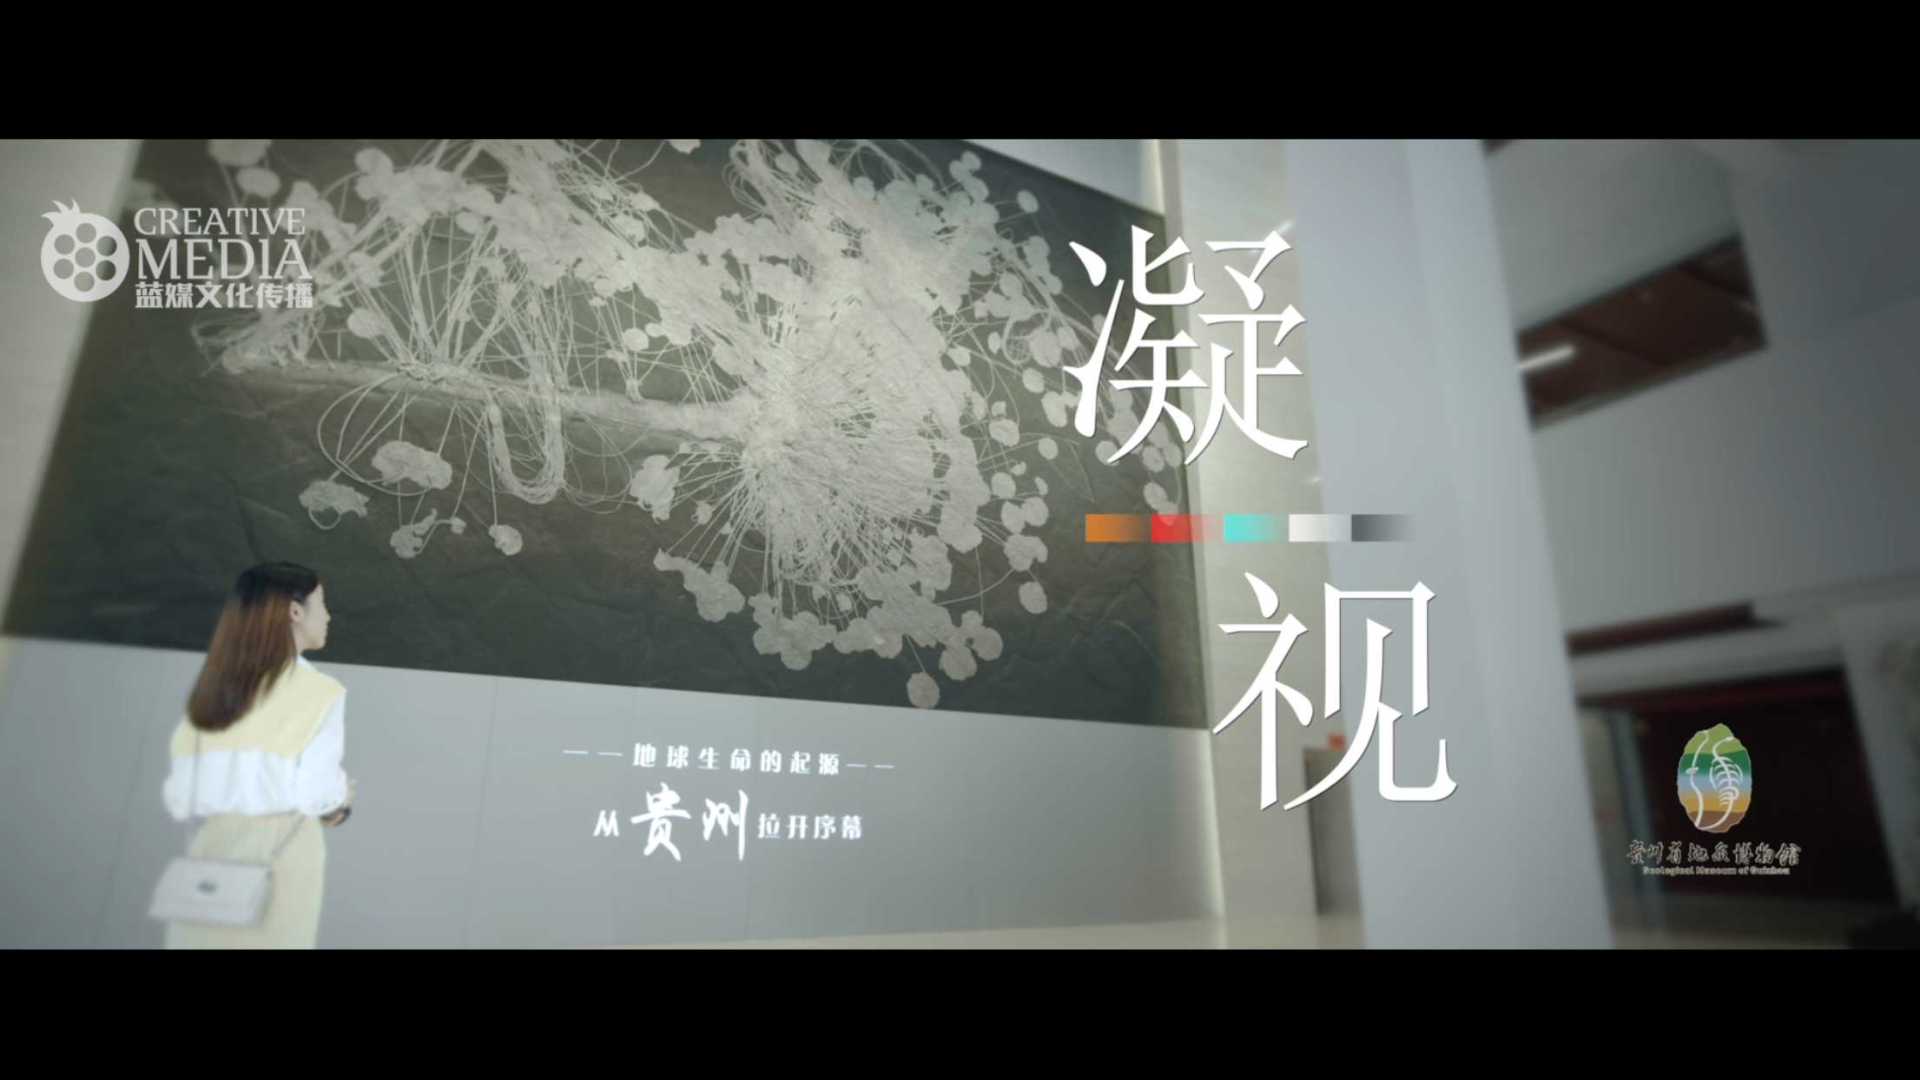 不一样的博物馆宣传片|贵州省地质博物馆《凝视》